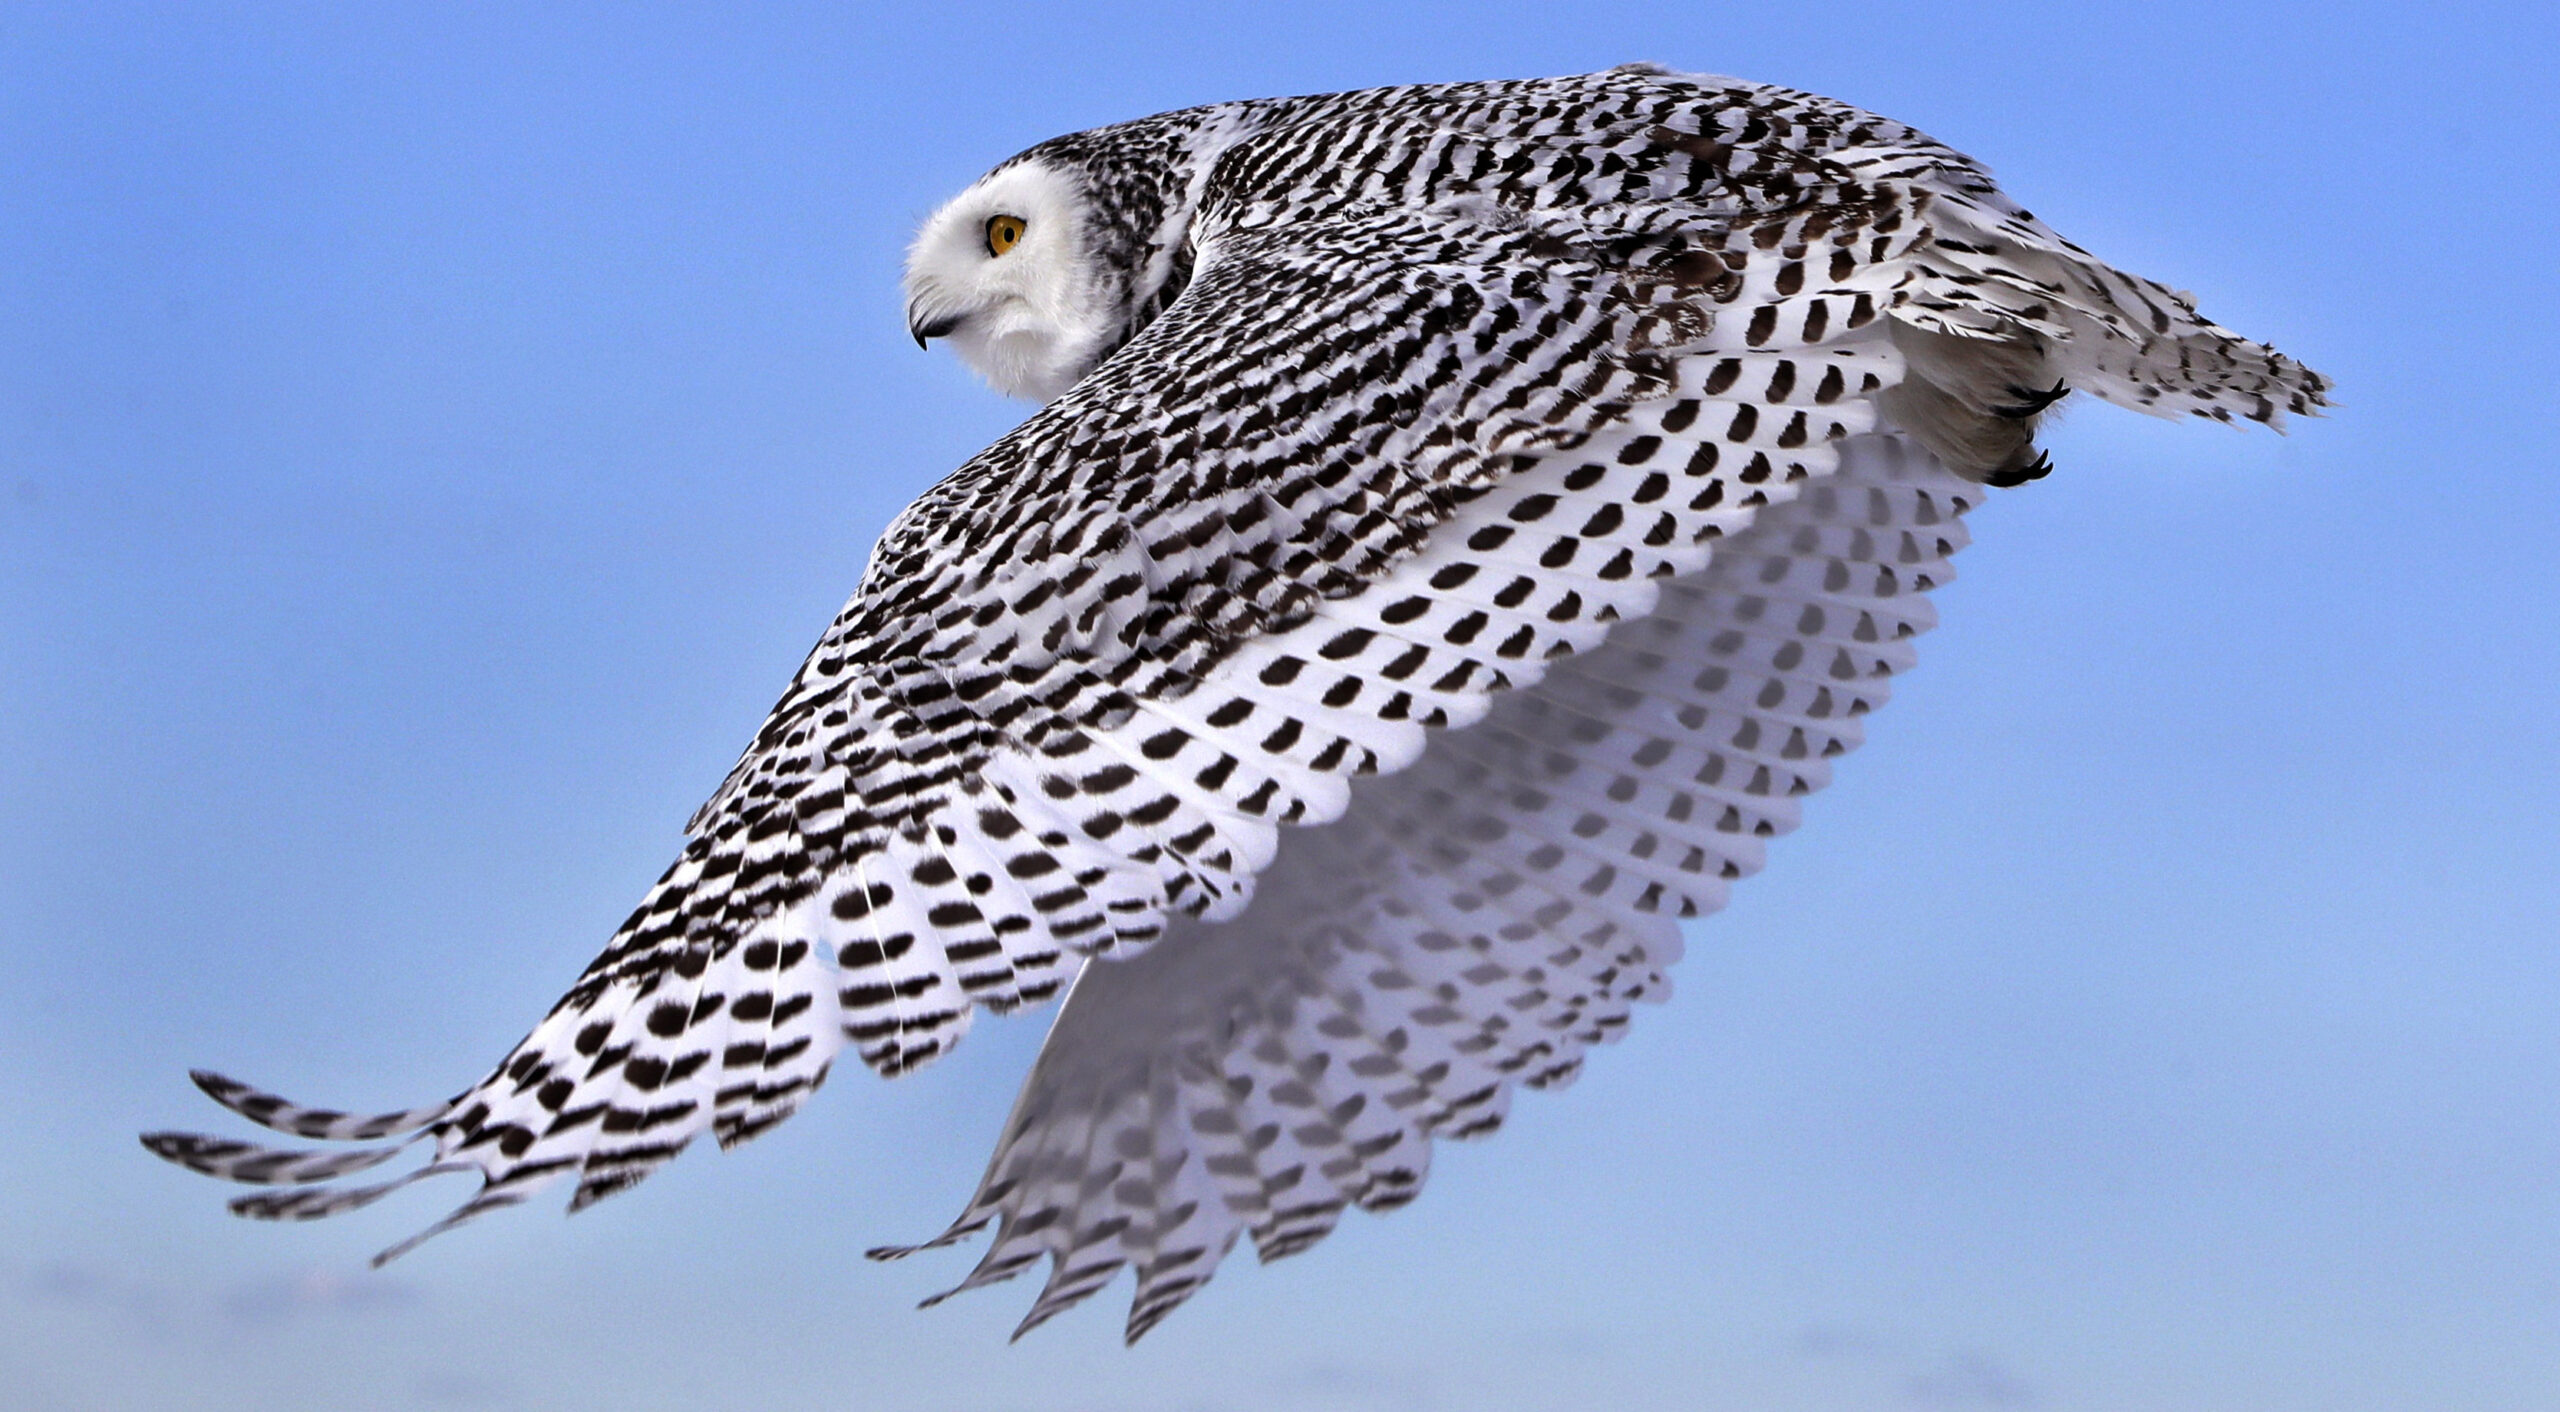 A snowy owl flying